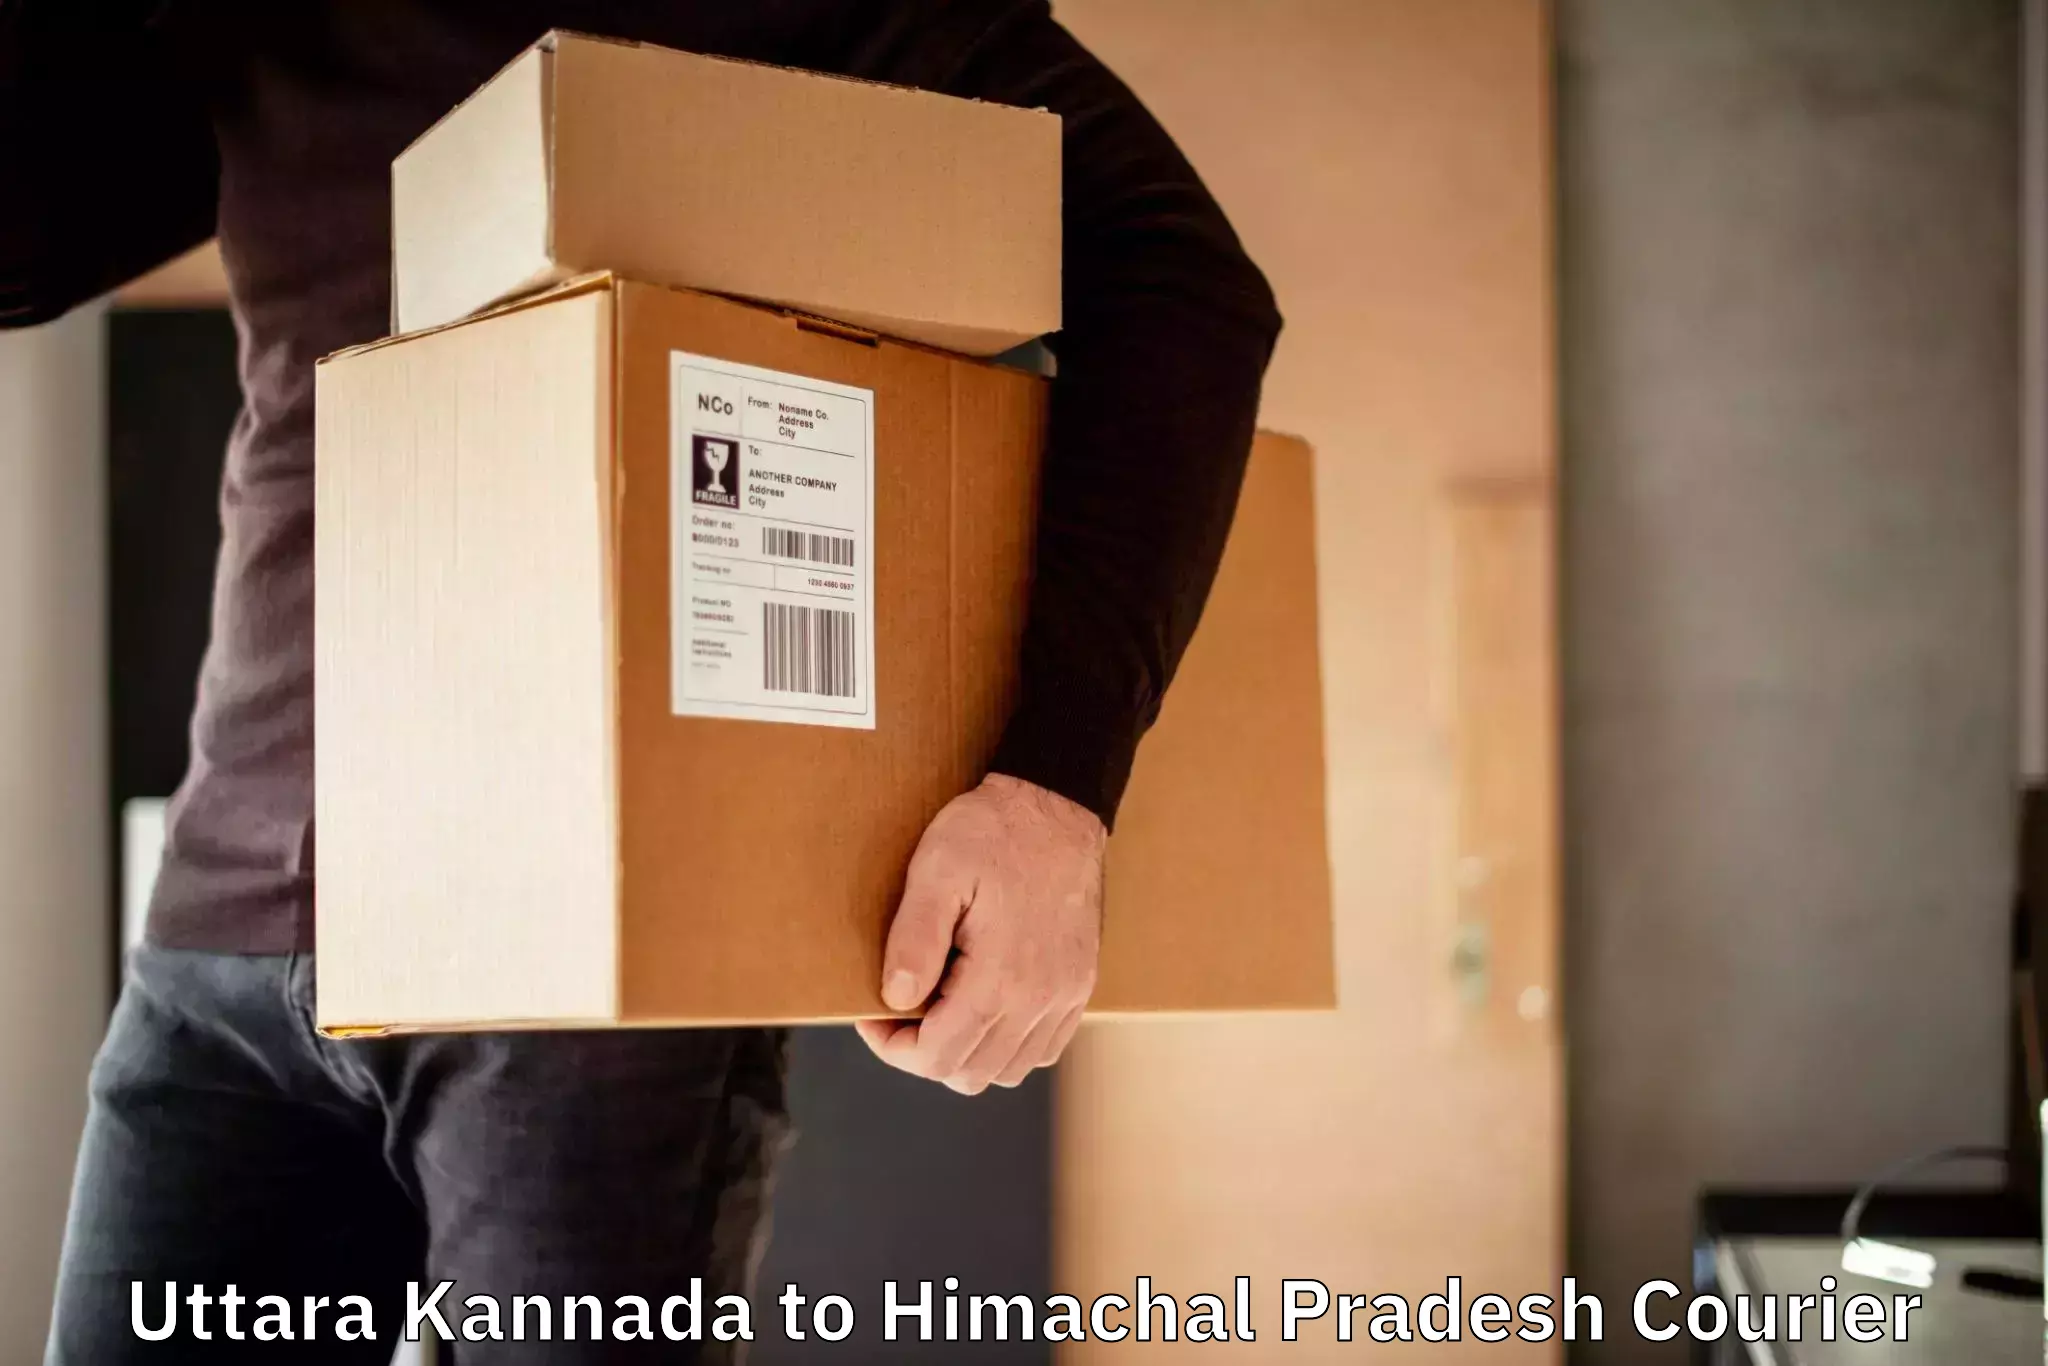 Nationwide courier service Uttara Kannada to Una